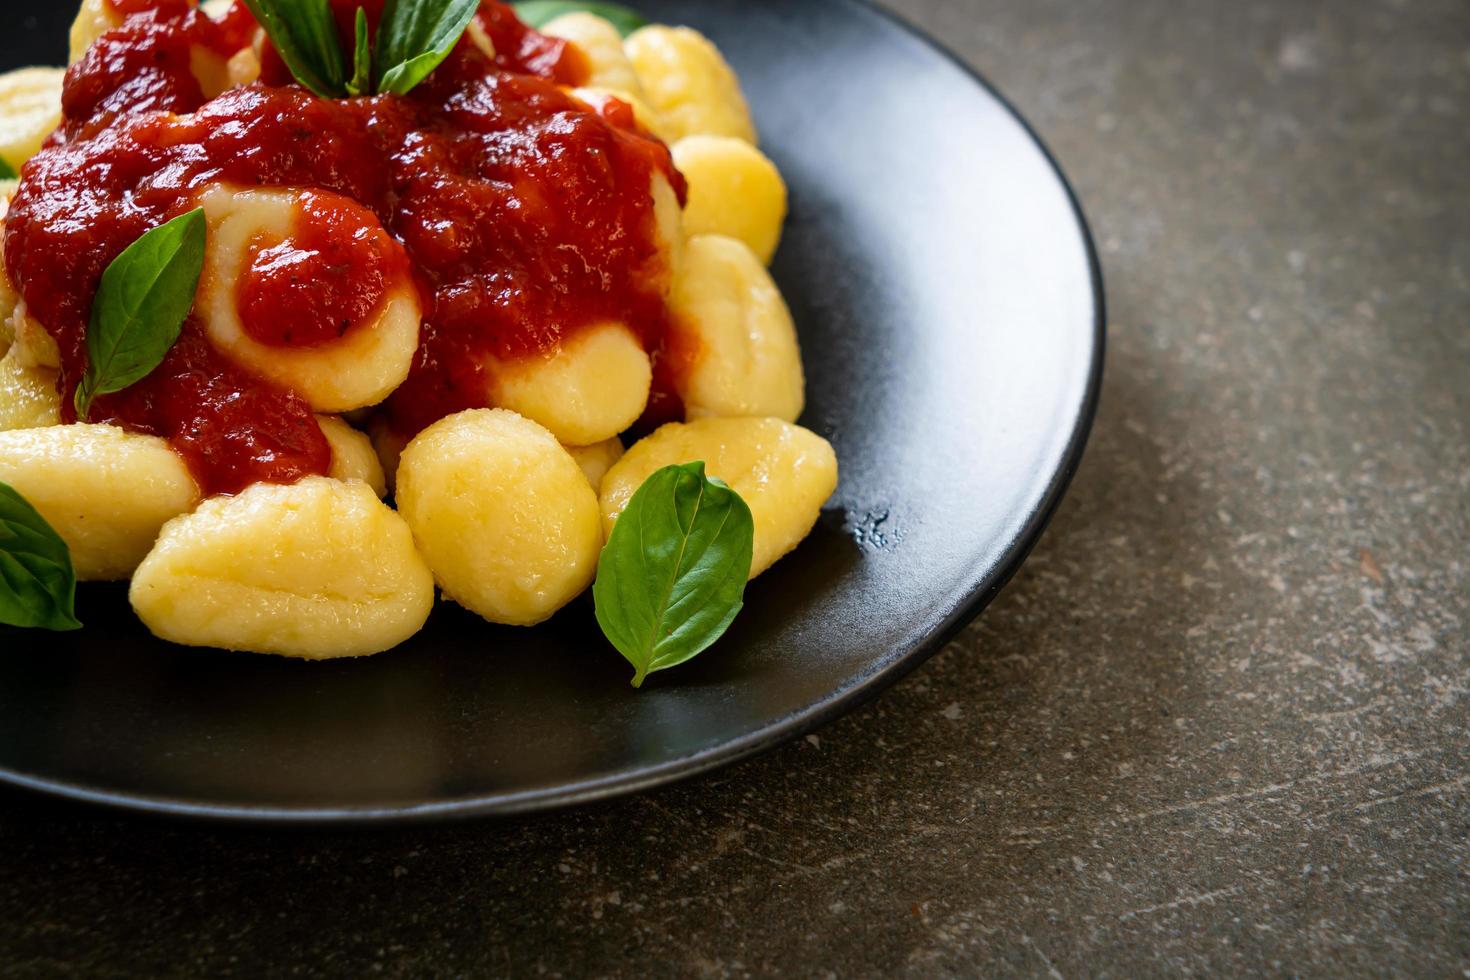 gnocchi i tomatsås med ost - italiensk matstil foto